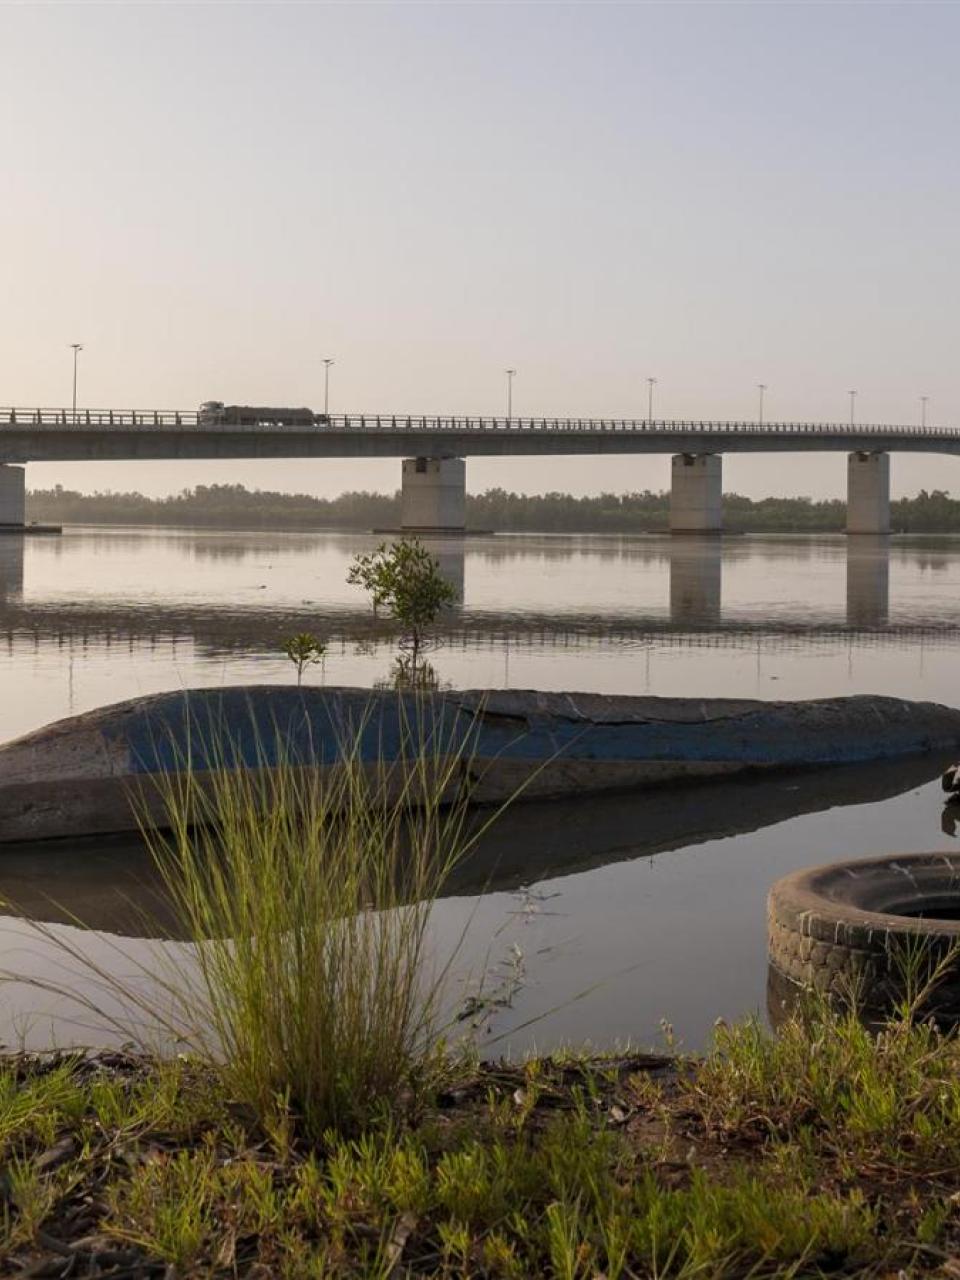 La gestione integrata delle risorse idriche del fiume Gambia per lo sviluppo sostenibile della regione è una questione transfrontaliera © DSC 